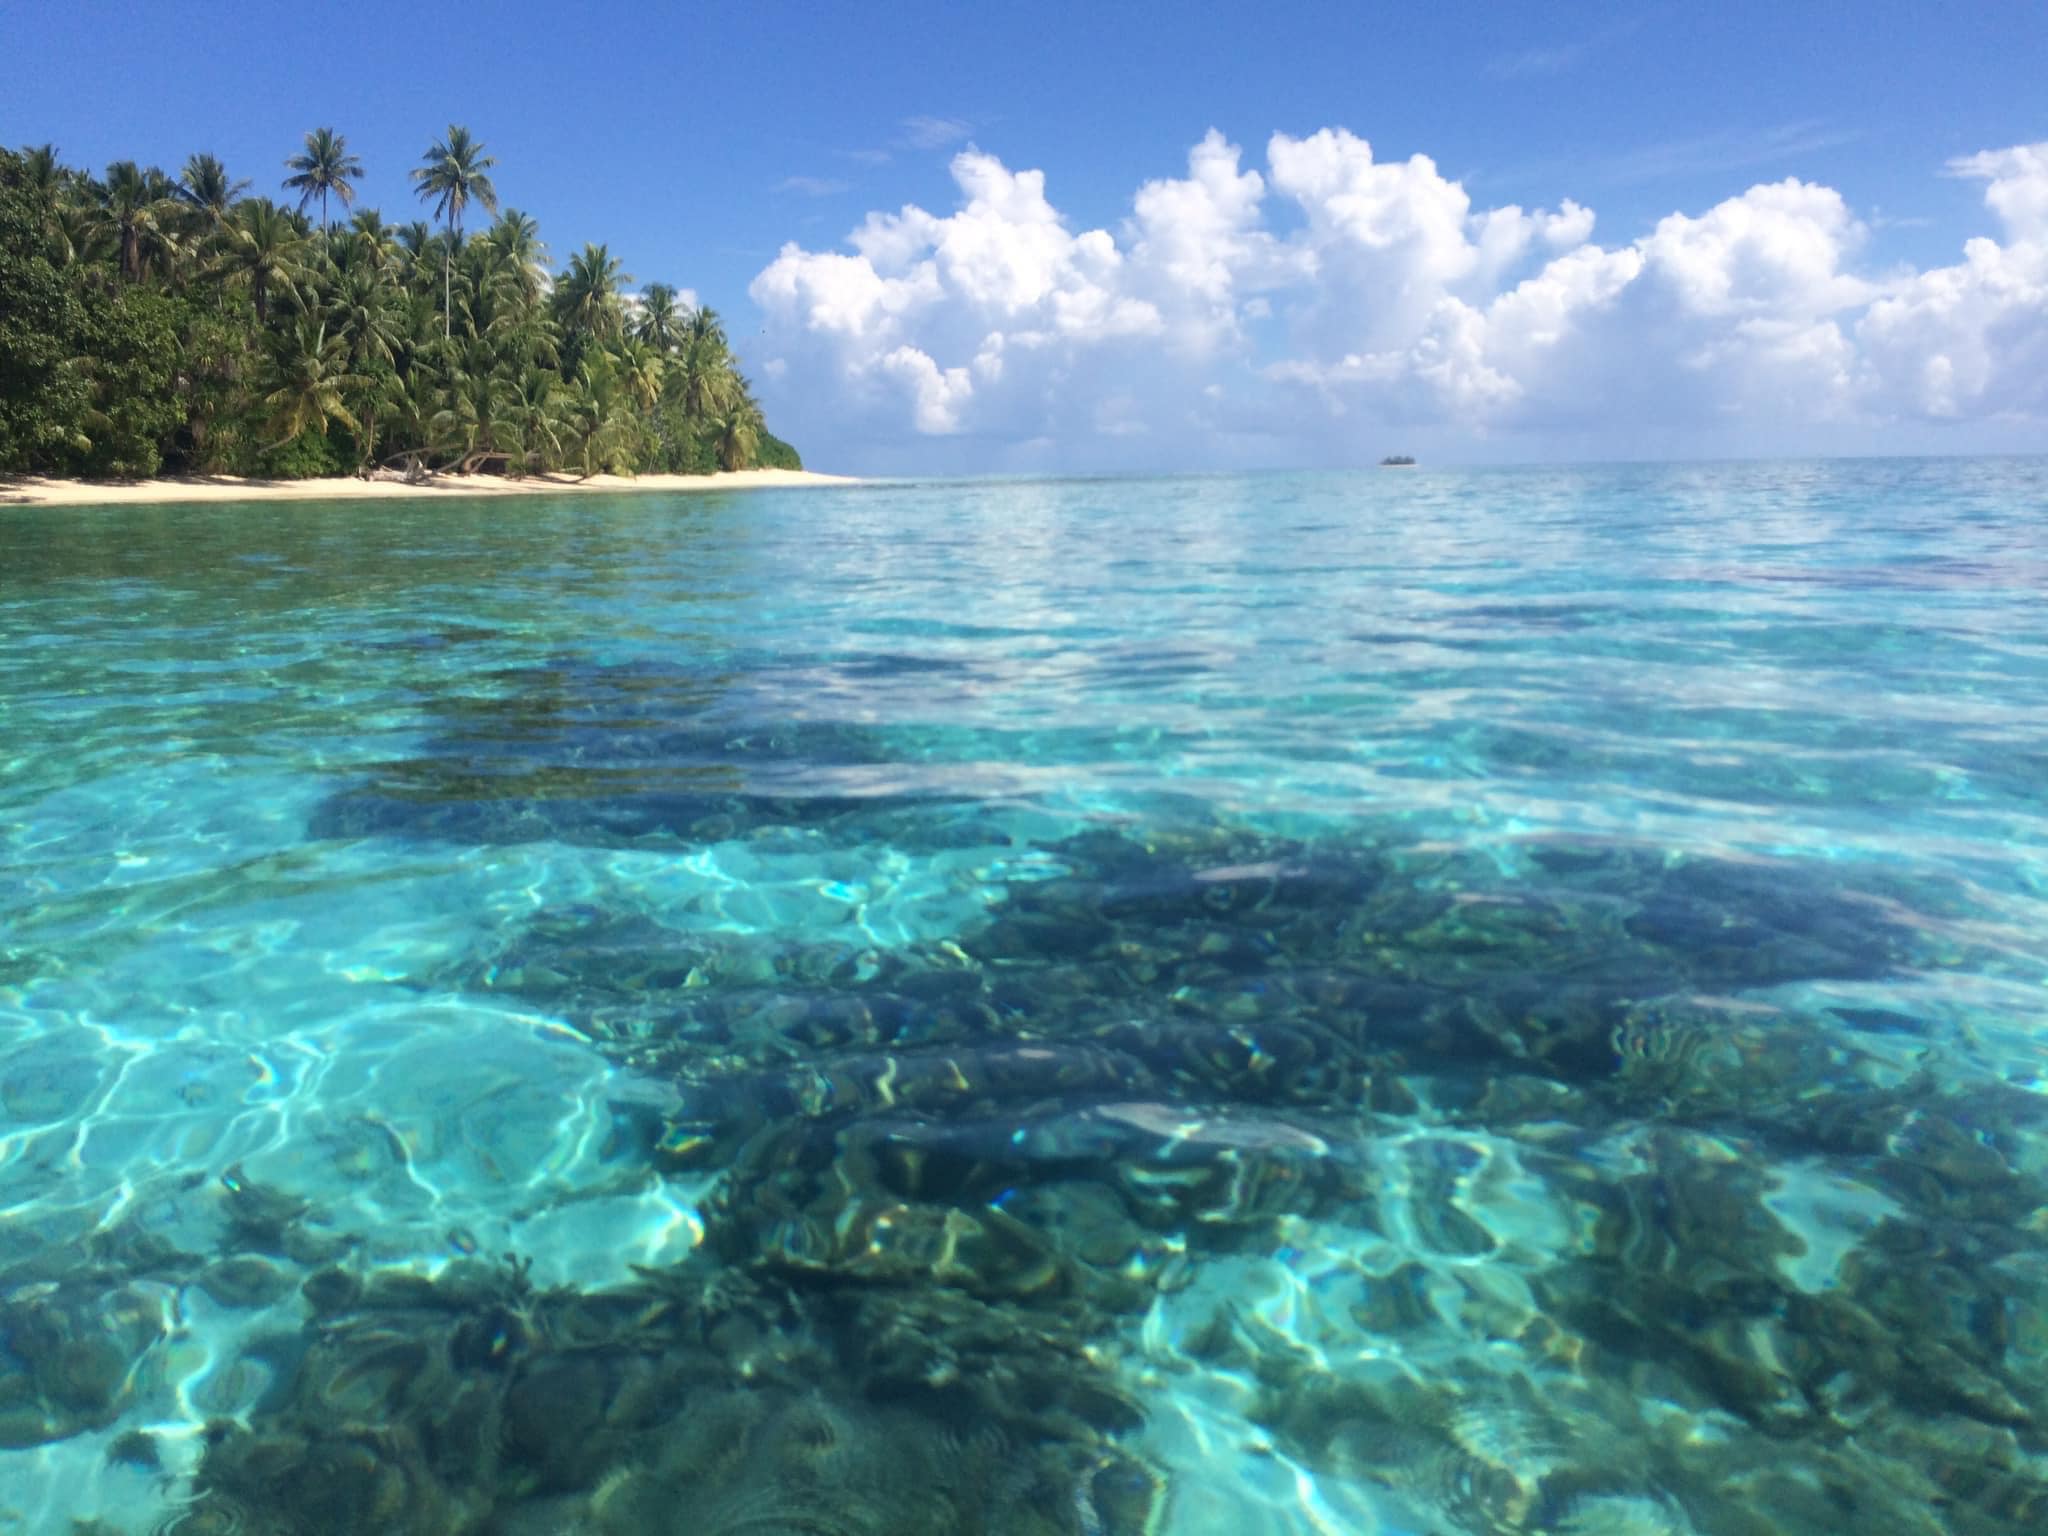 Island and blue lagoon ocean waters of Funafuti Tuvalu